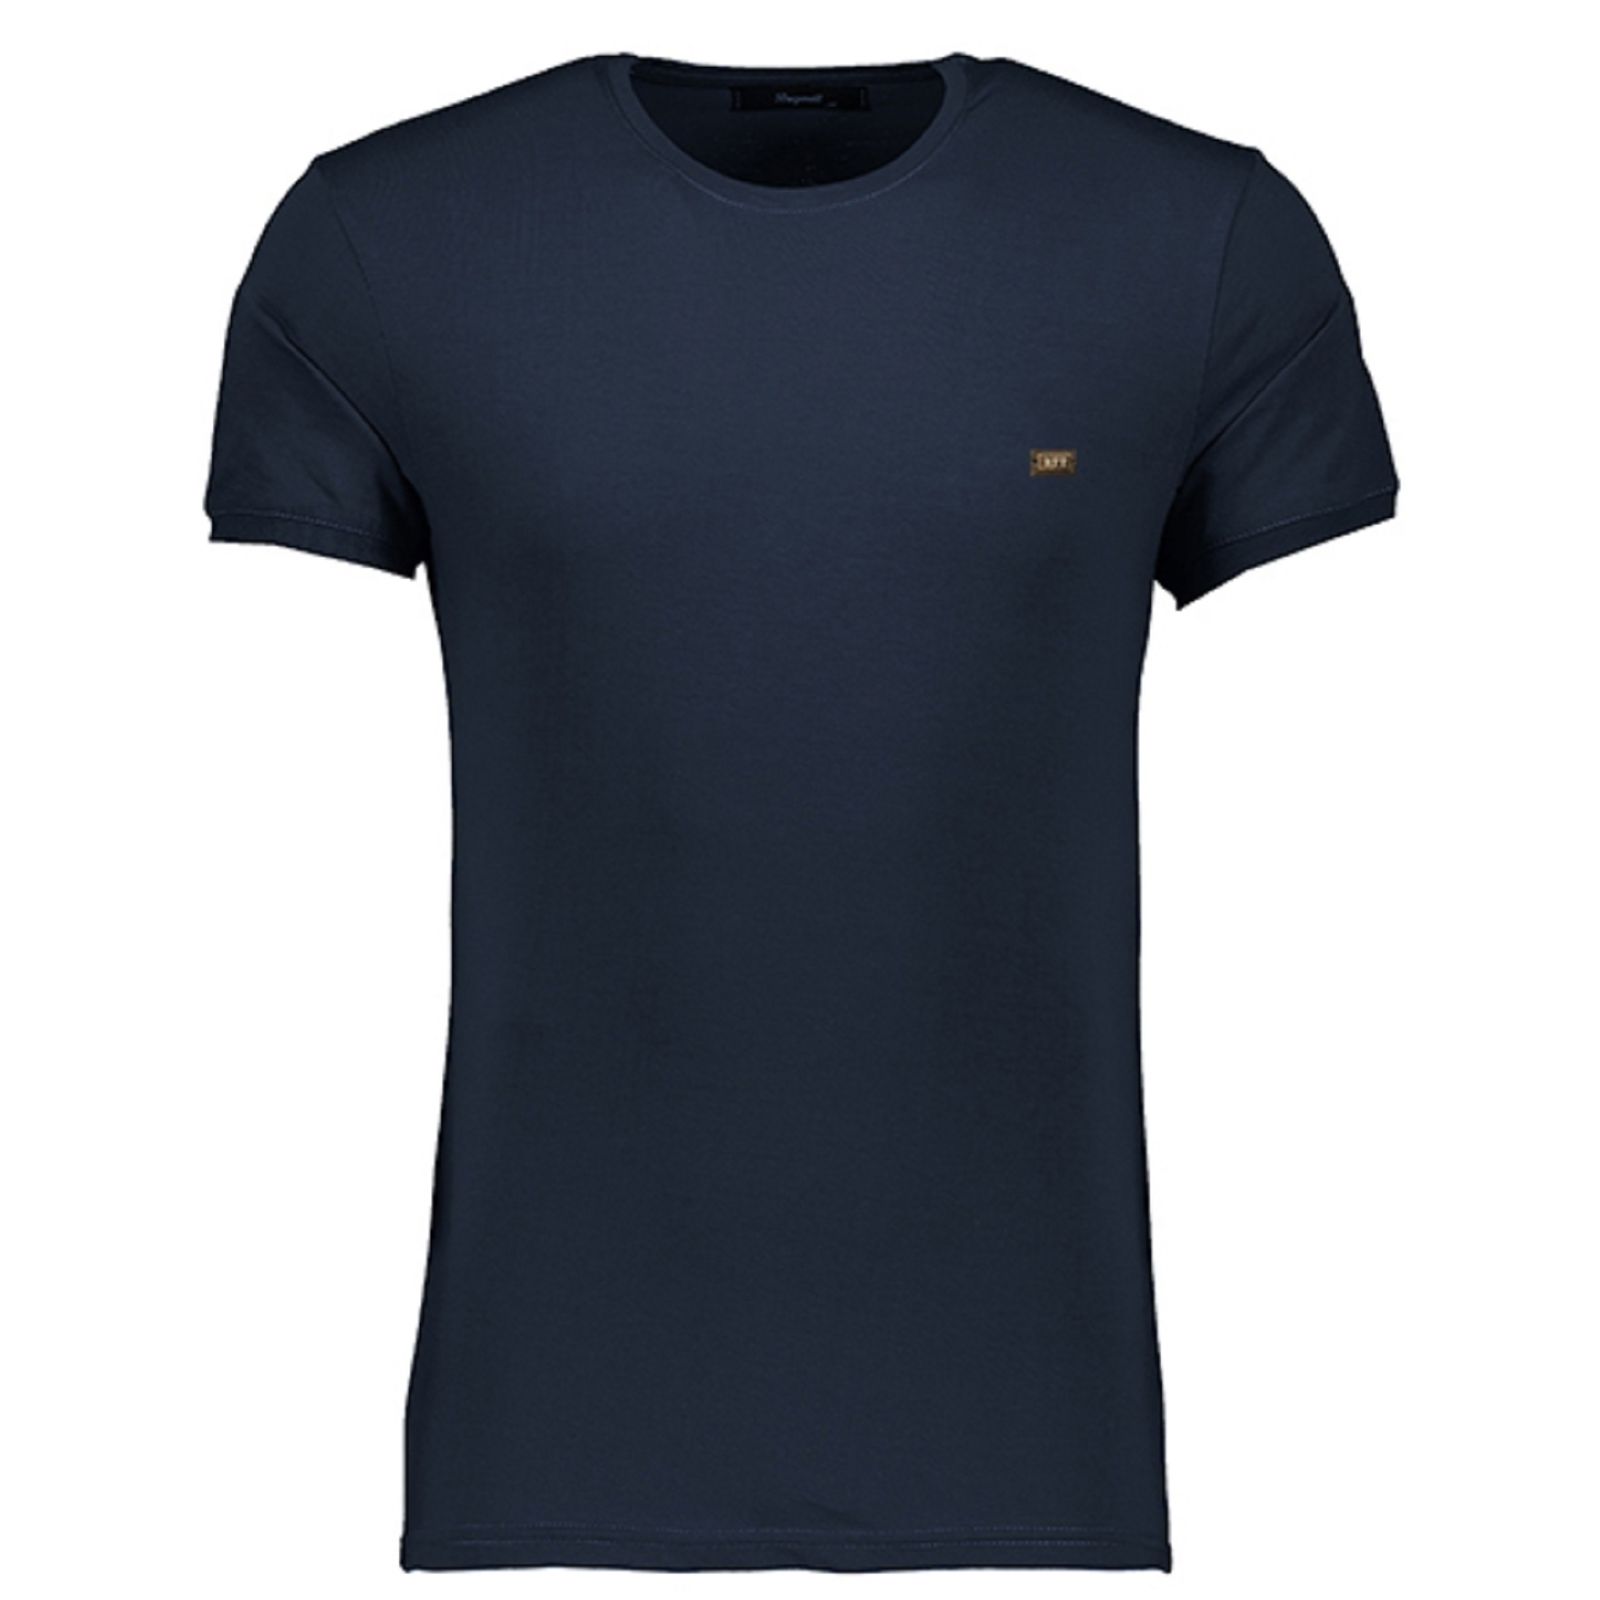 تی شرت آستین کوتاه مردانه باینت کد 334-2 btt -  - 1